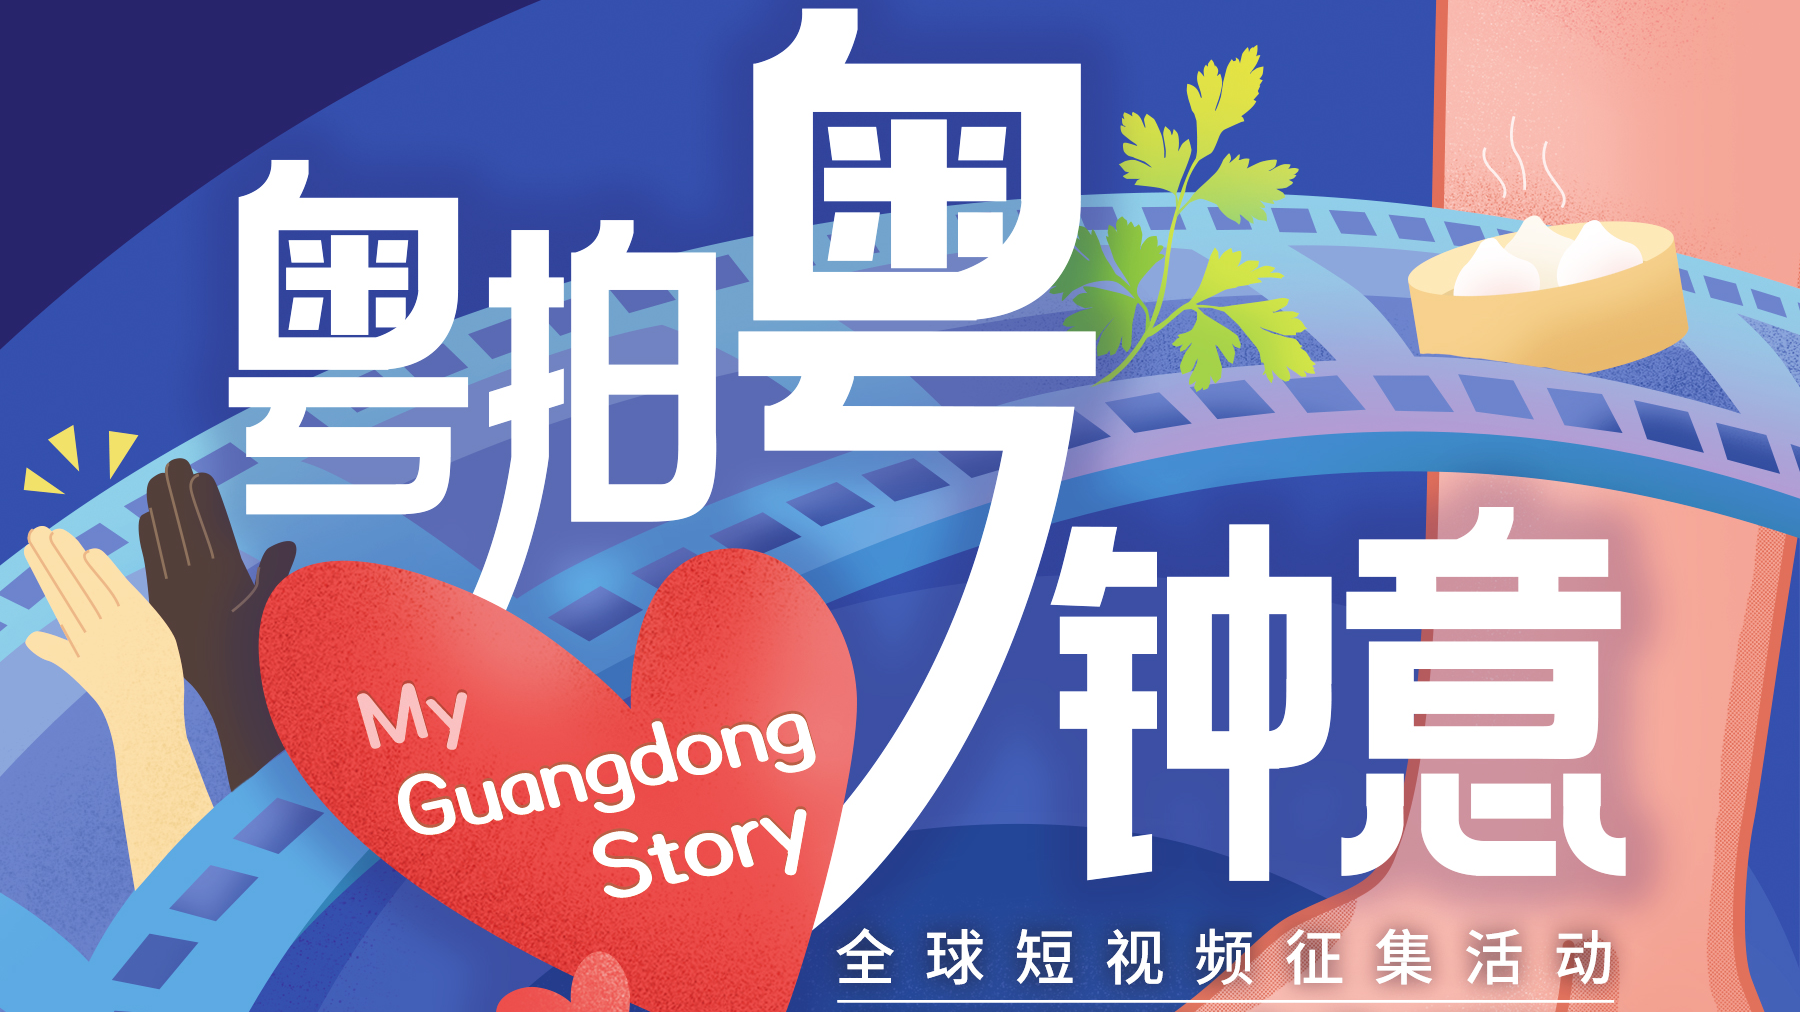 【专题】粤拍粤钟意 My Guangdong Story